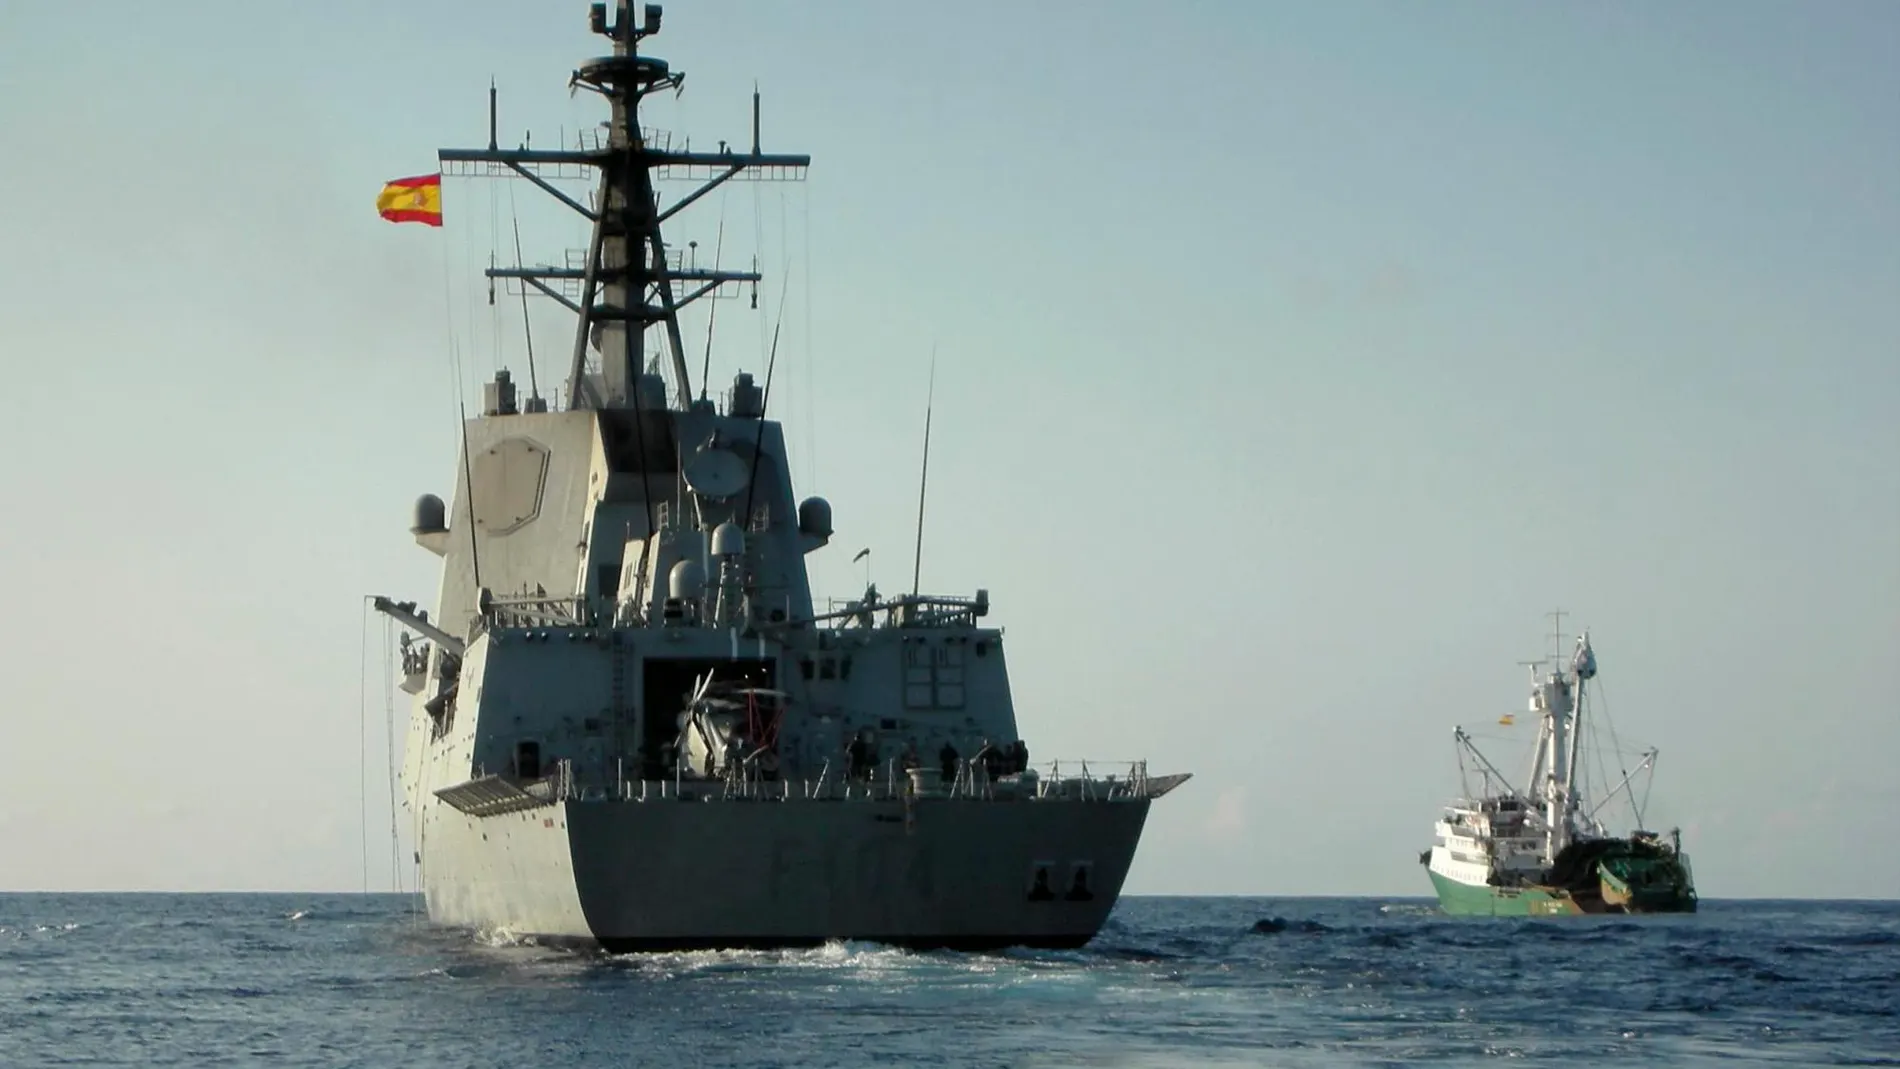 Borrell resta importancia a la retirada de combate de la fragata Méndez Núñez